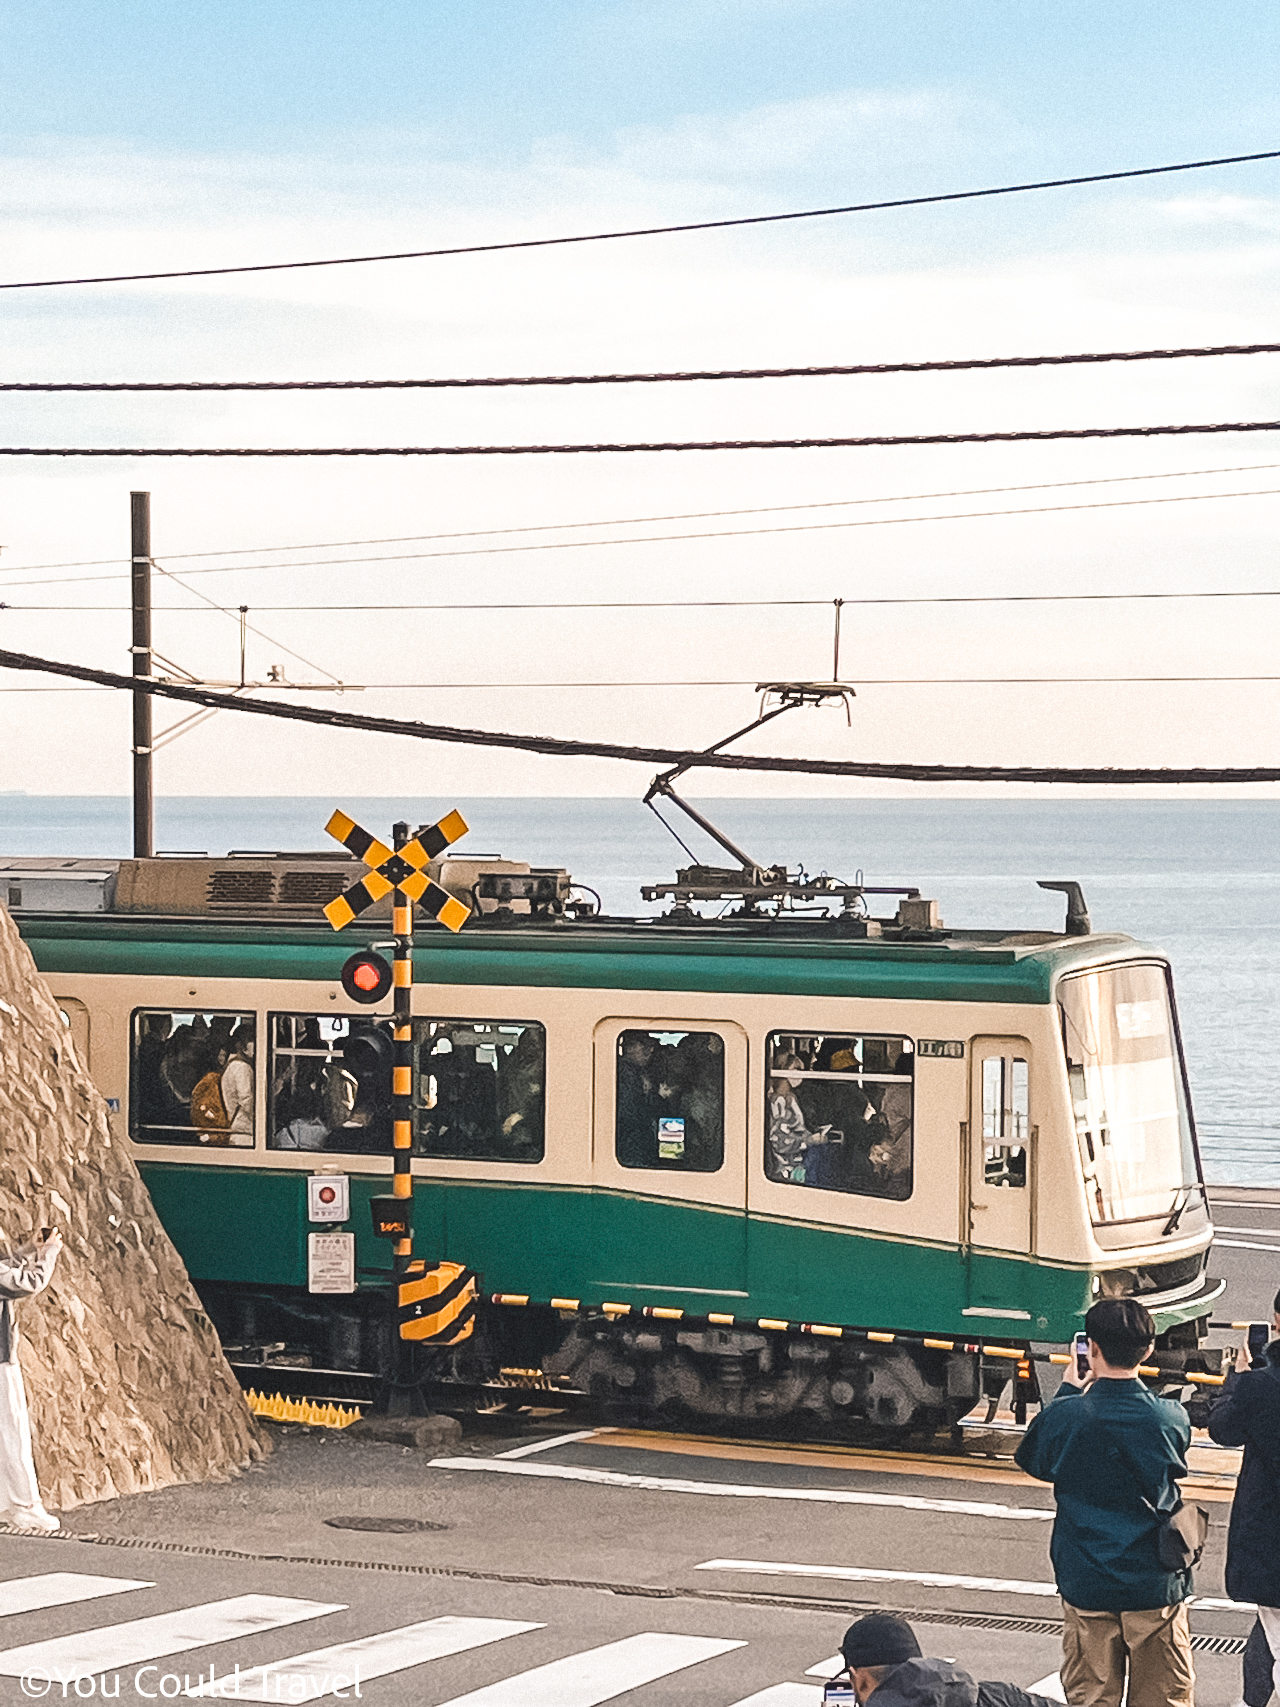 Enoden Ln=ine nostalgic train in Kamakura